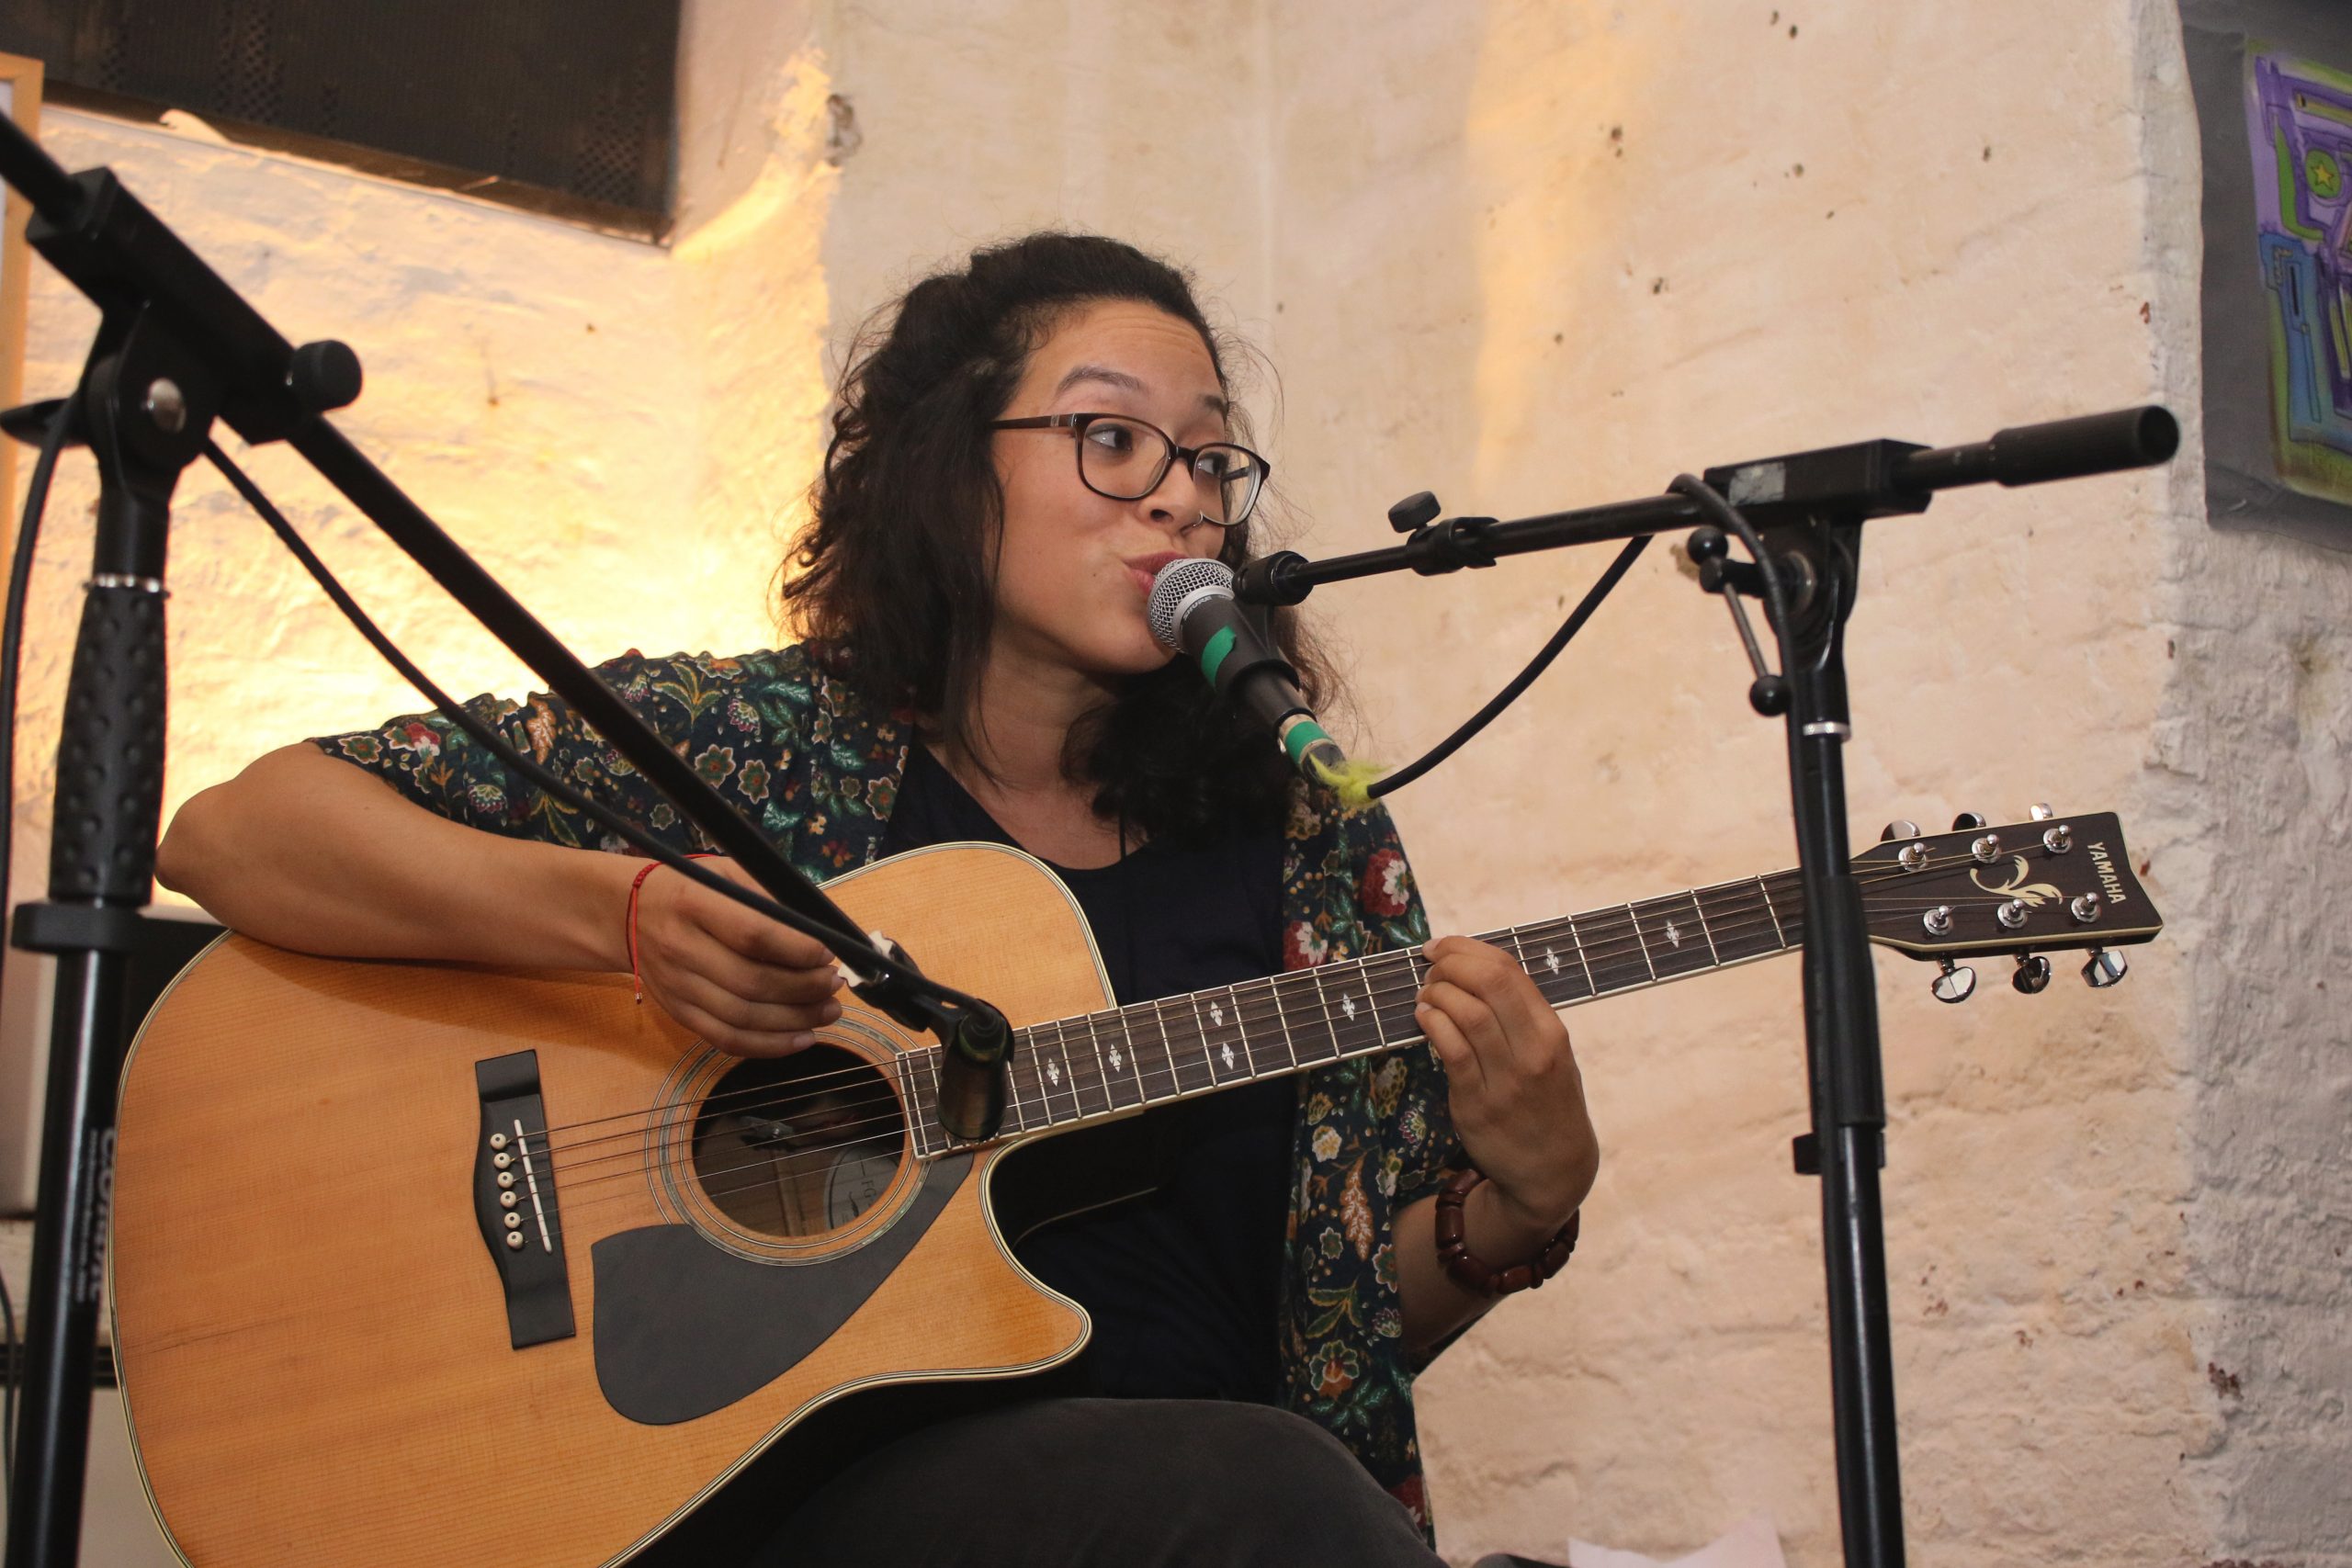 Junge Frau mit Brille, MIkrofon spielt Gitarre und schaut nach links